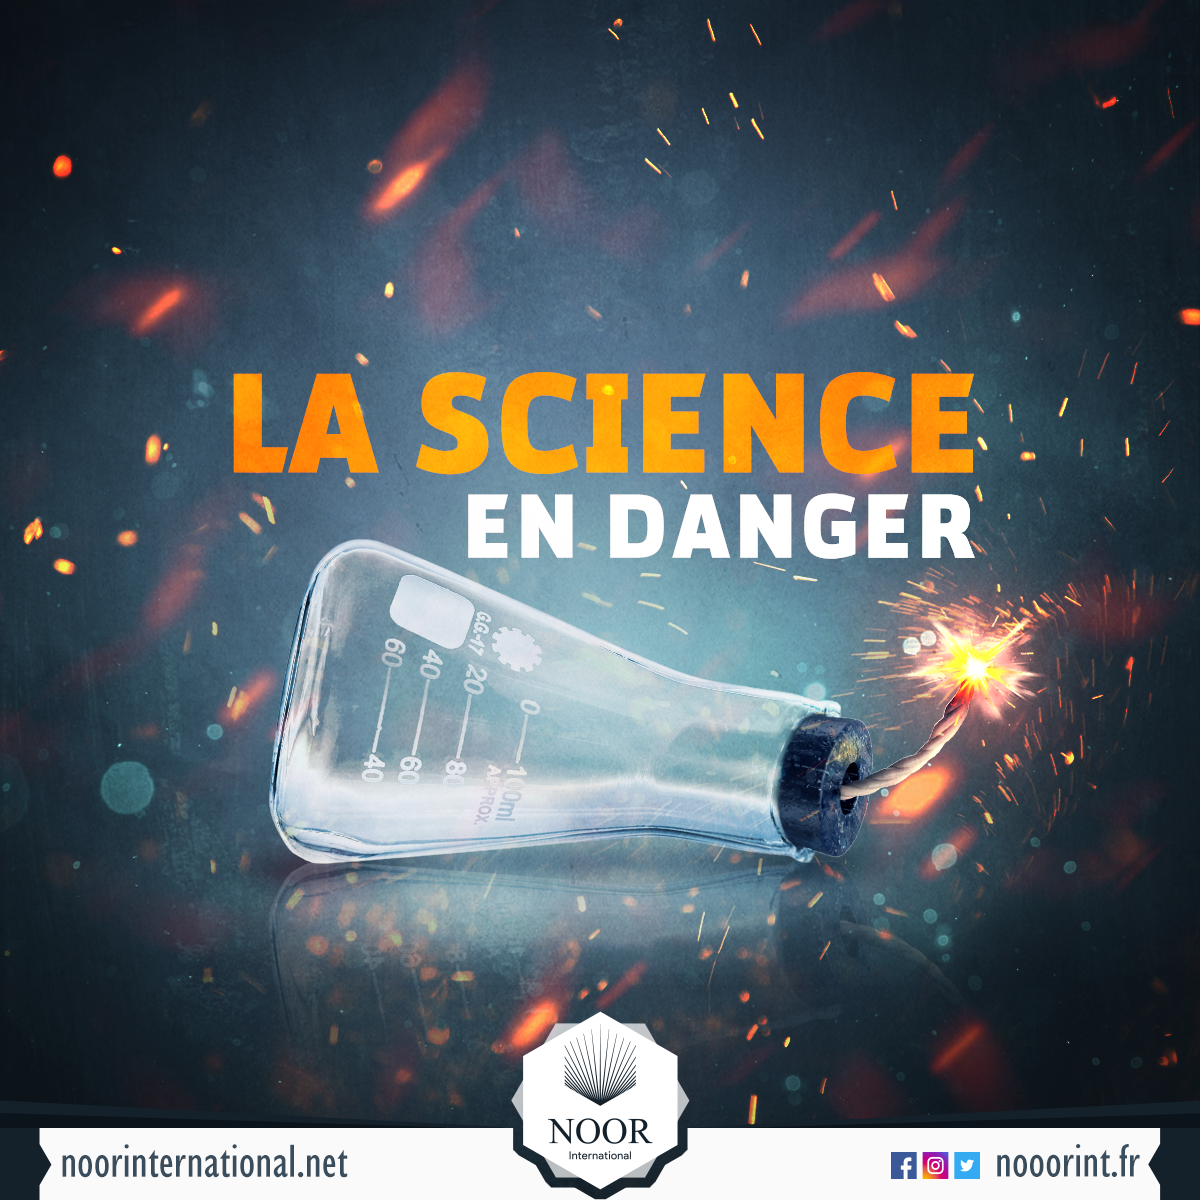 La science en danger